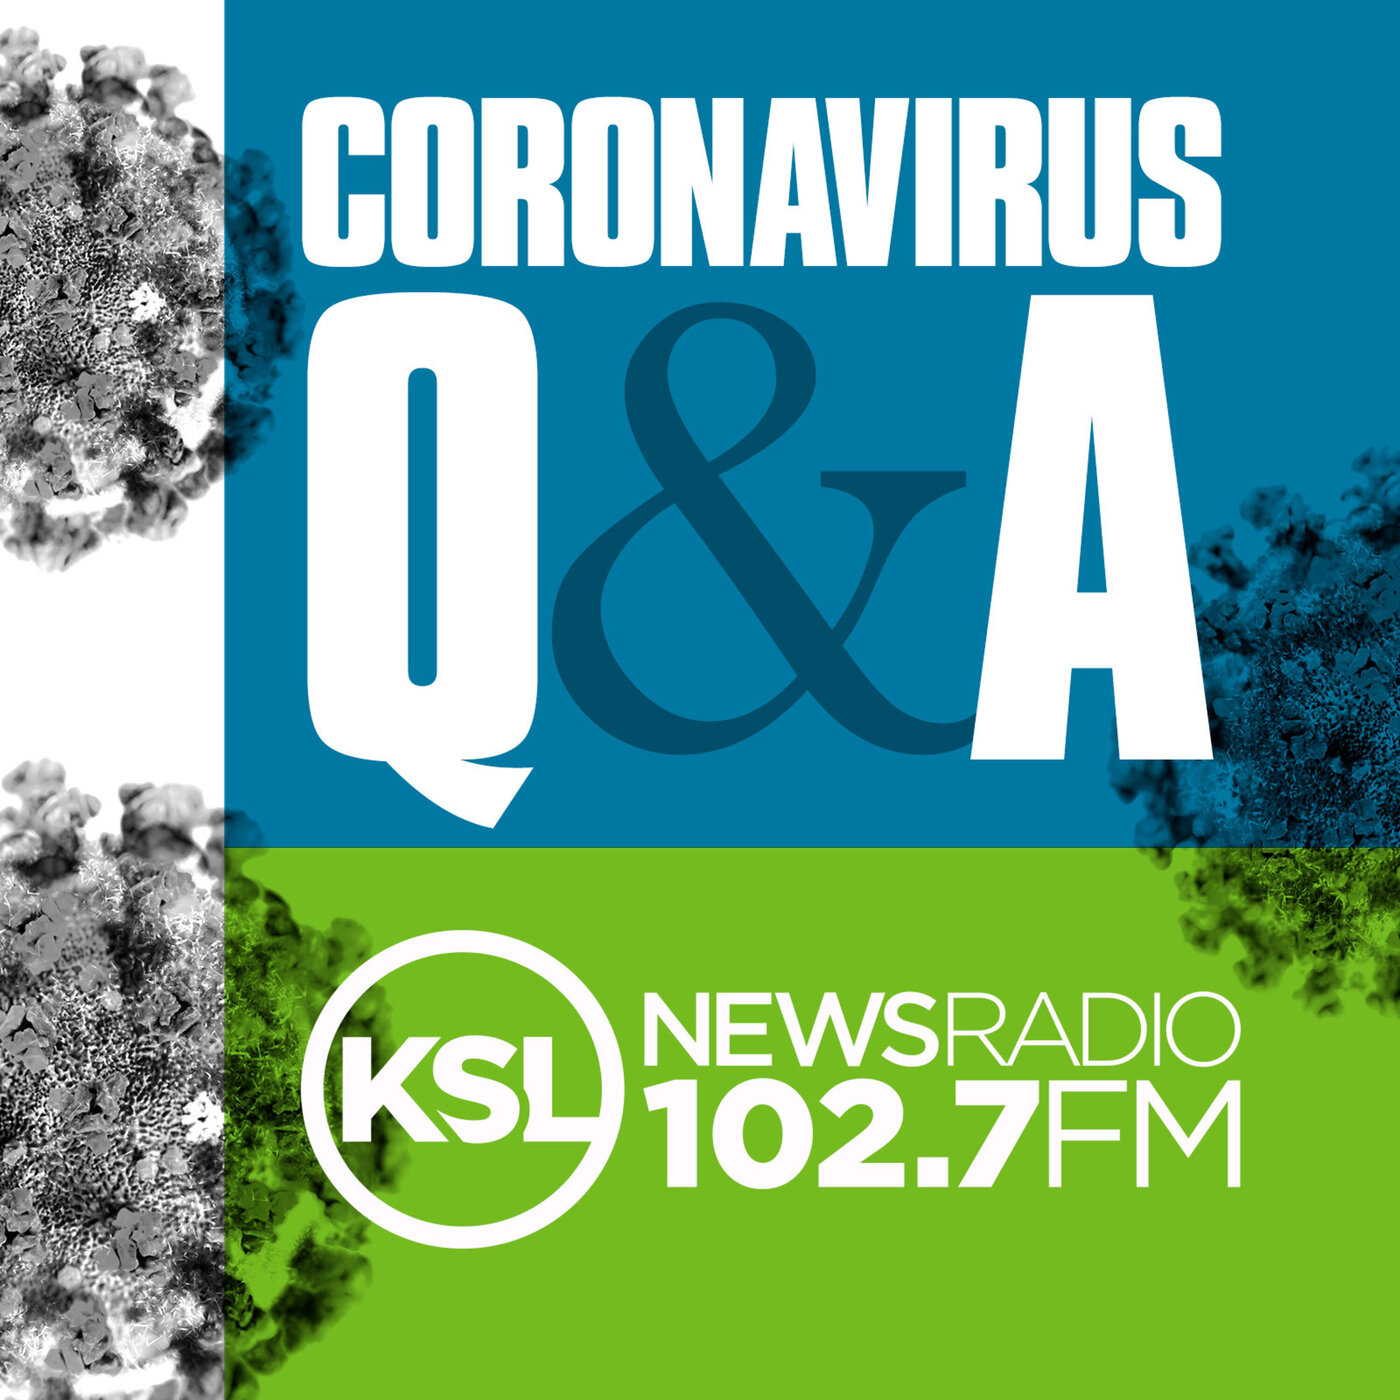 Coronavirus Update November 24th